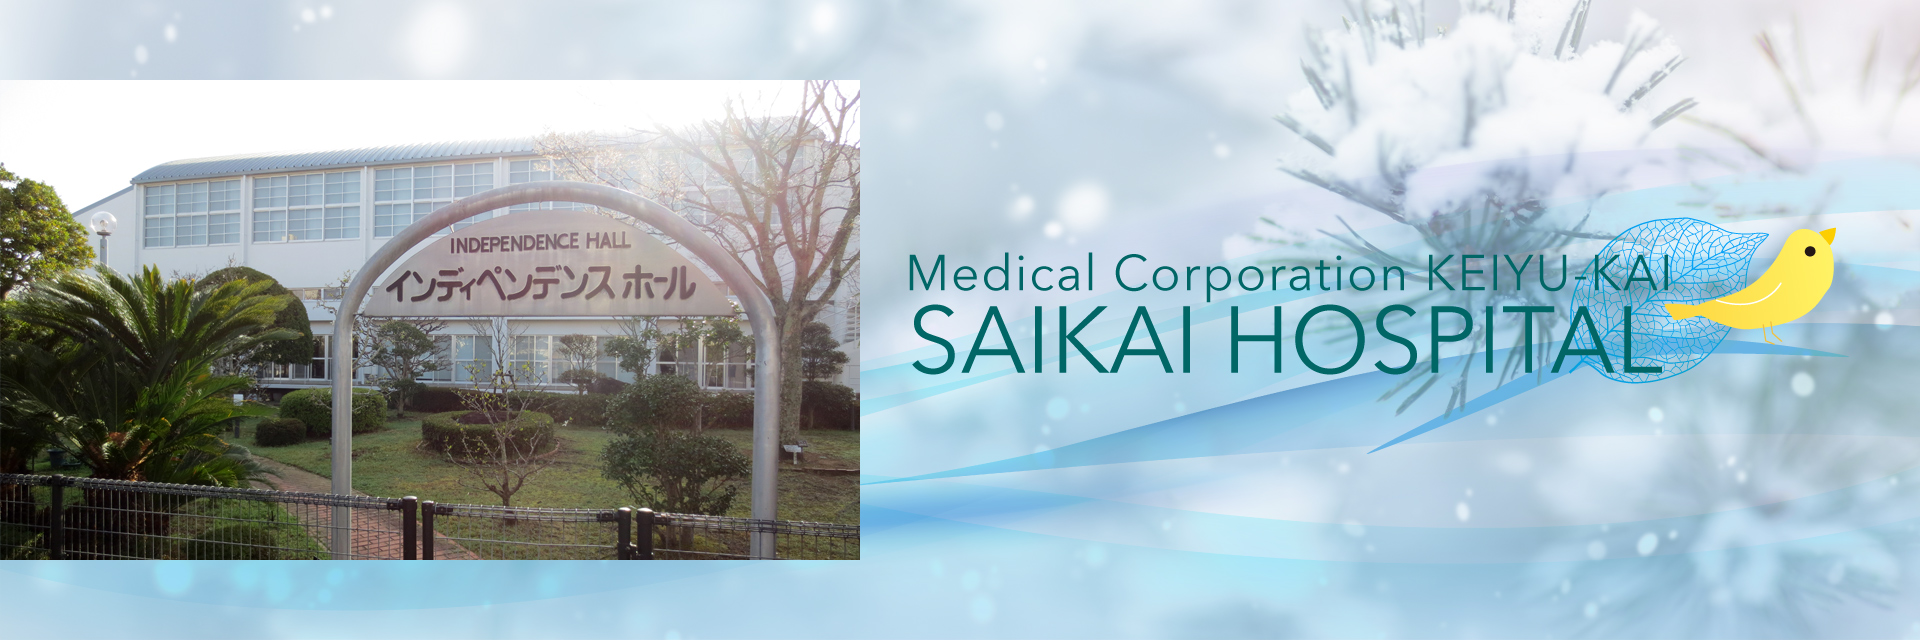 Medical Corporation KEIYU-KAI SAIKAI HOSPITAL